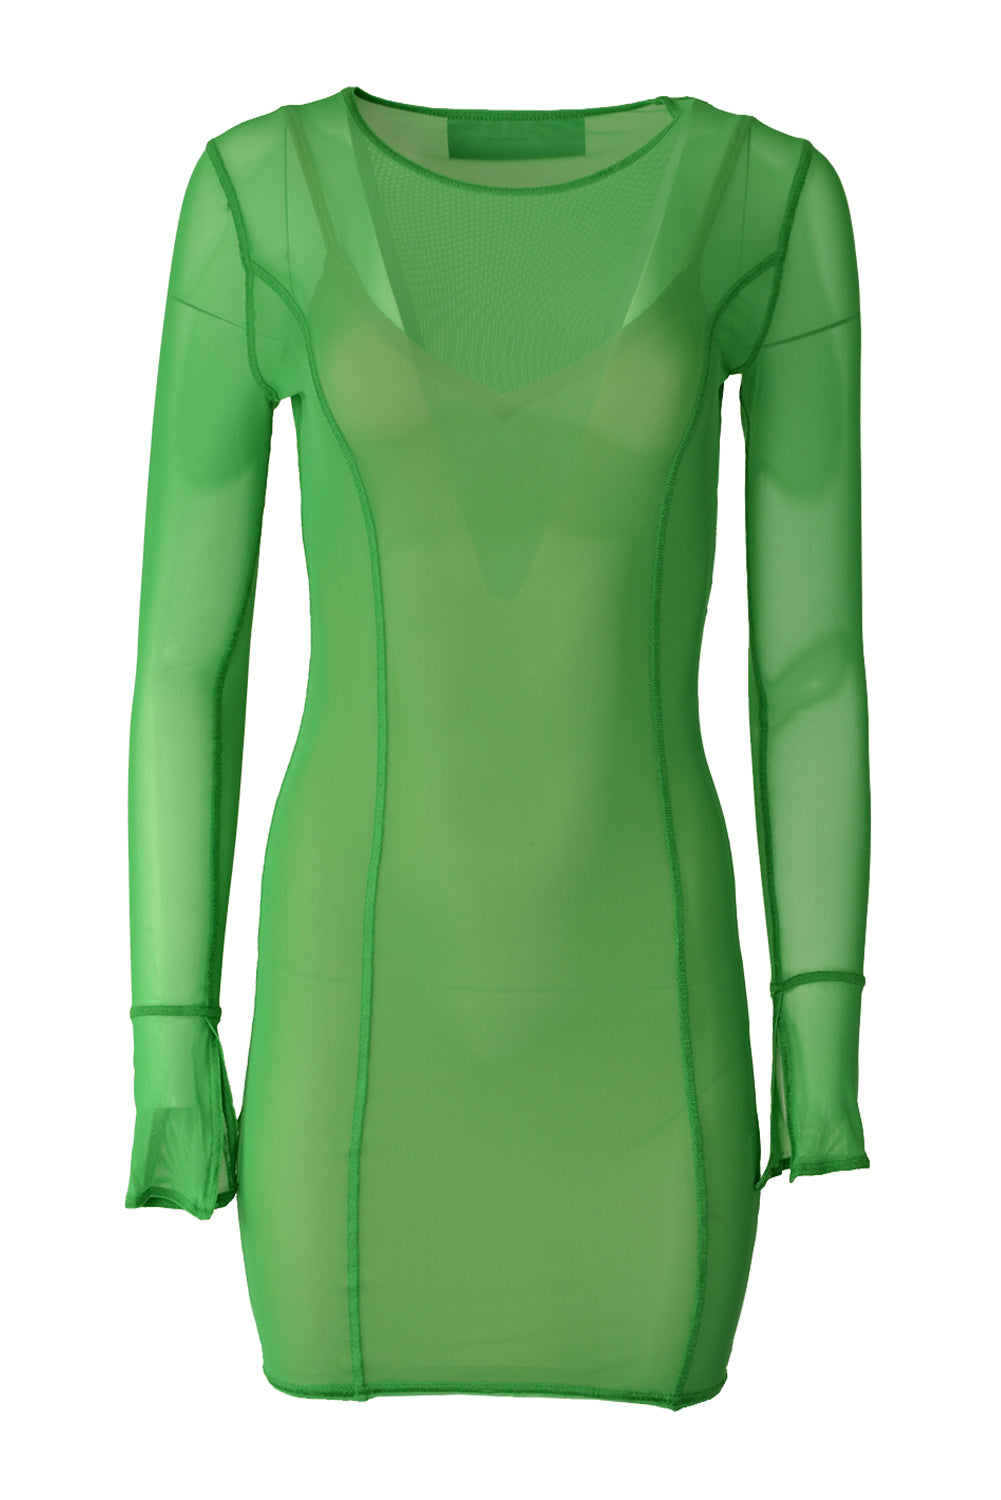 Patrizia Pepe 2A2662 Net Mini Dress Vibrant Green